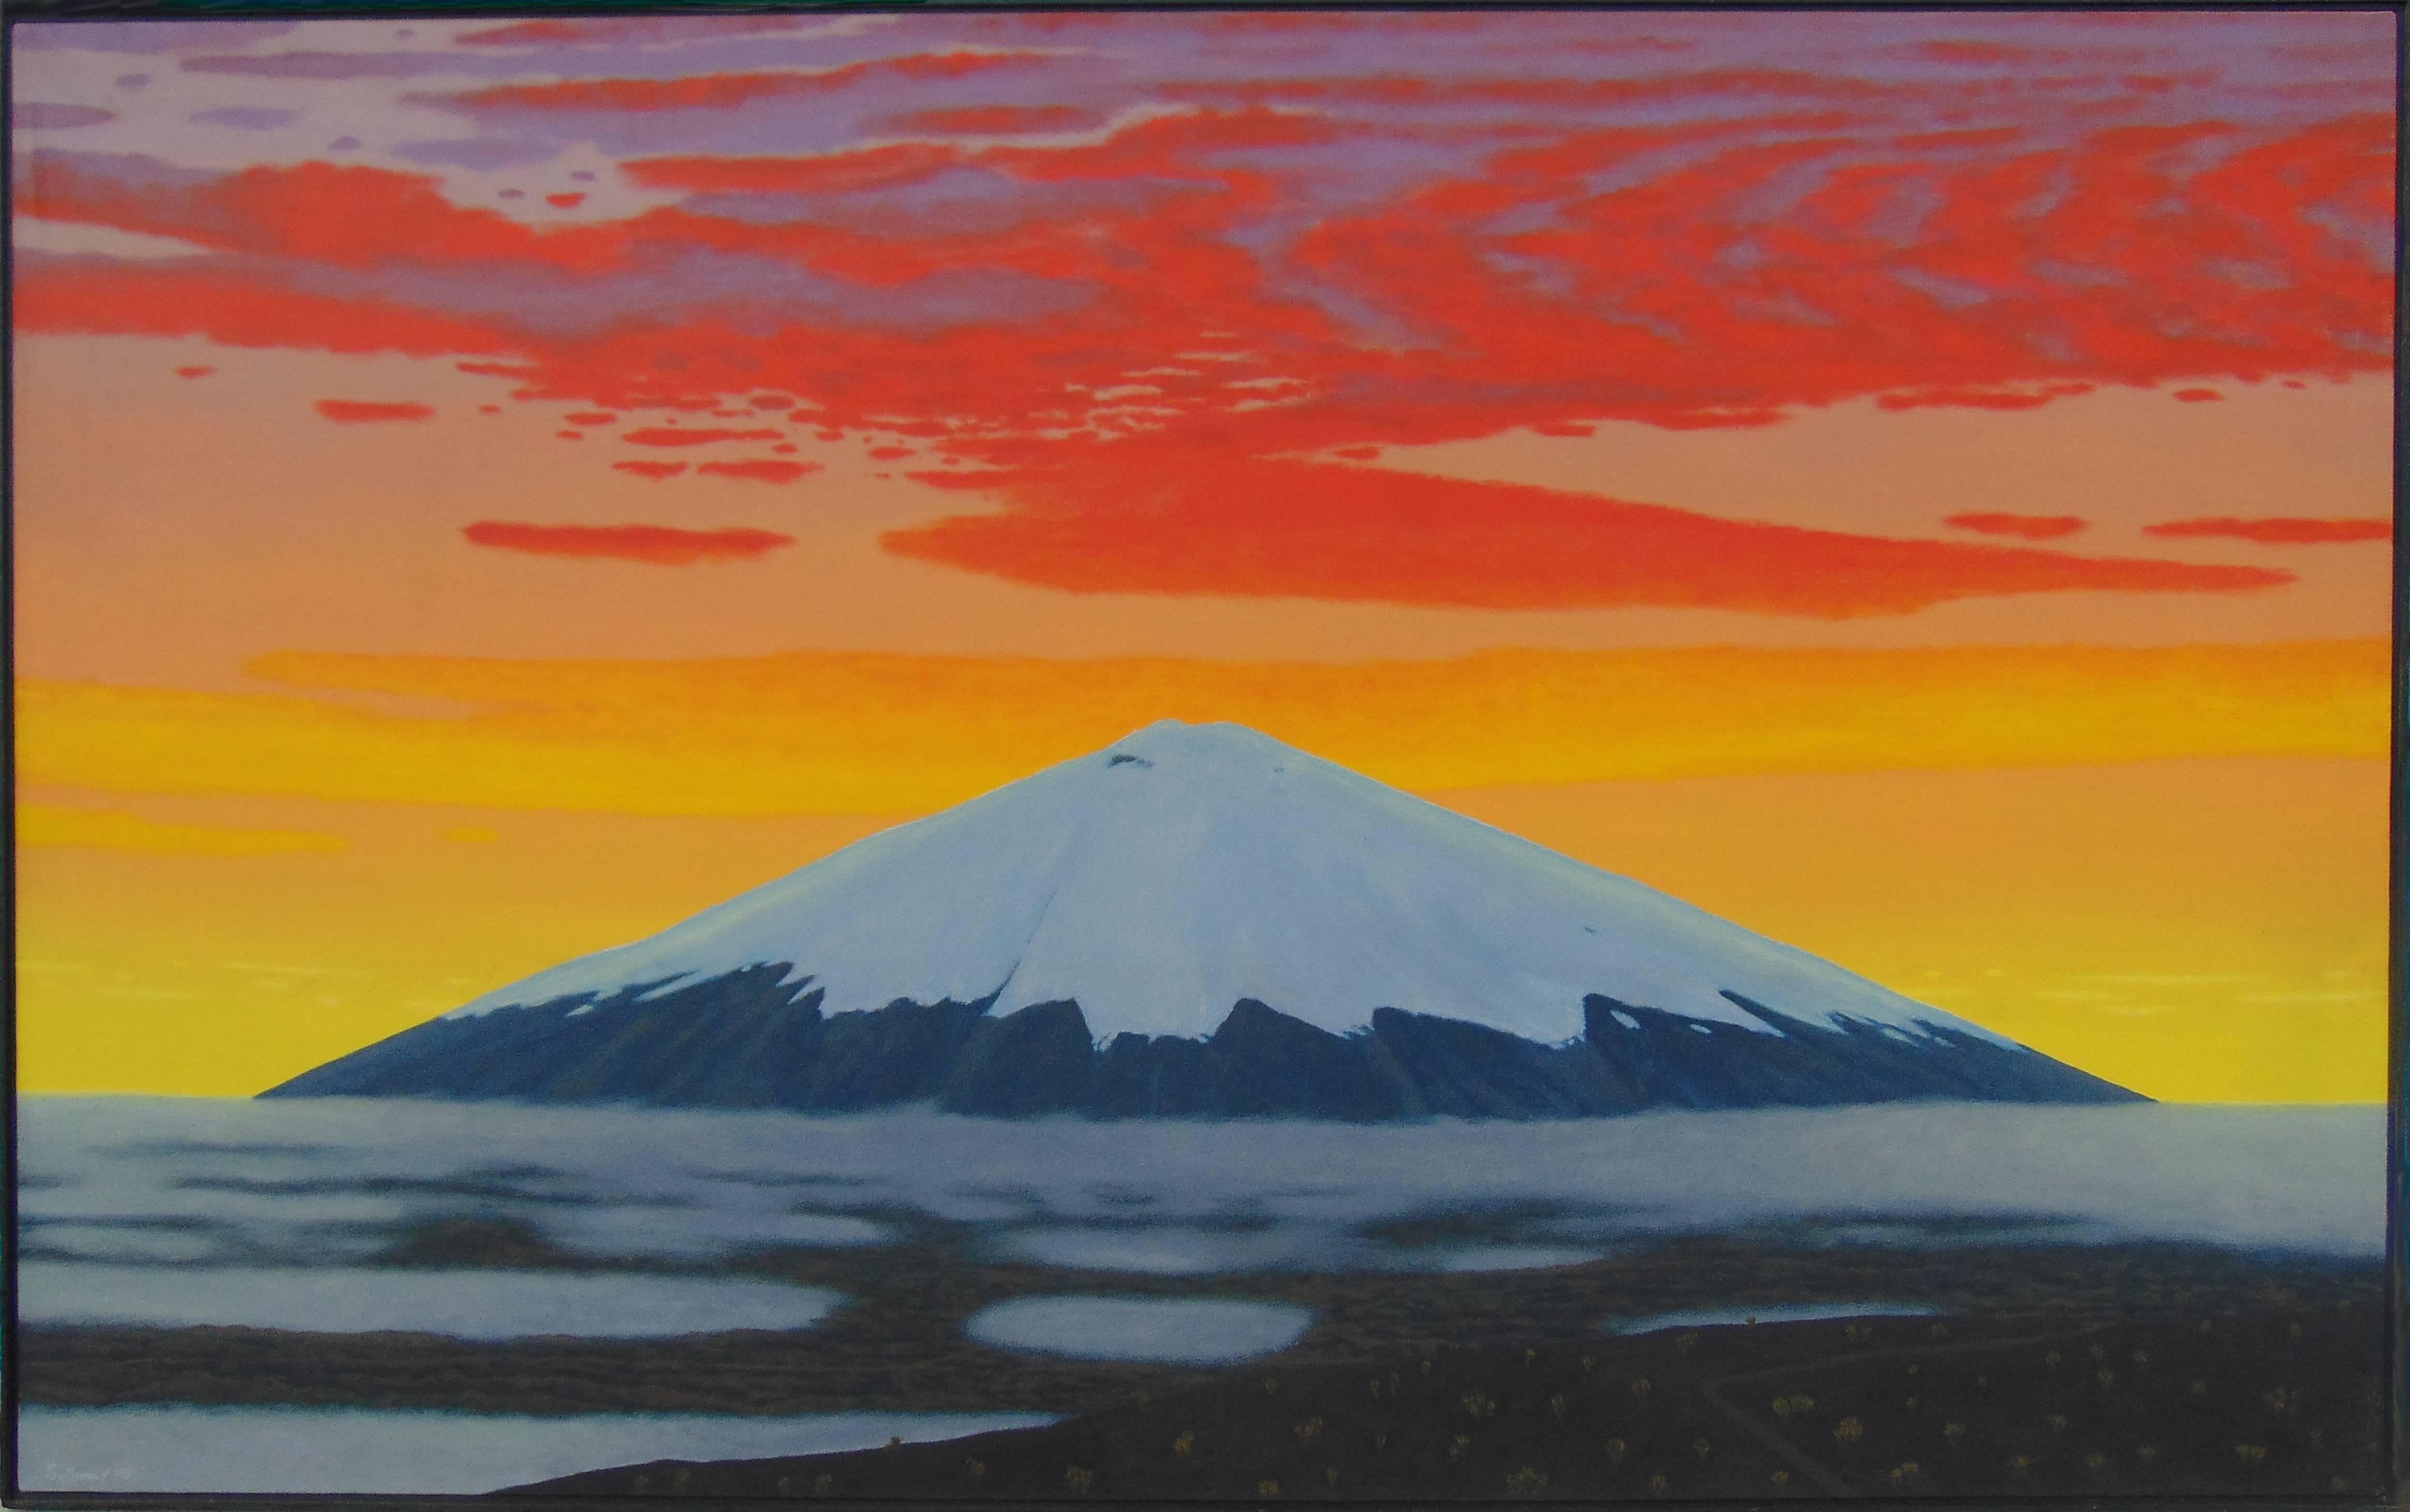 Landscape Painting Bill Sullivan - Cotopaxi II (peinture à l'huile moderne d'un coucher de soleil sur un volcan dans les Andes)